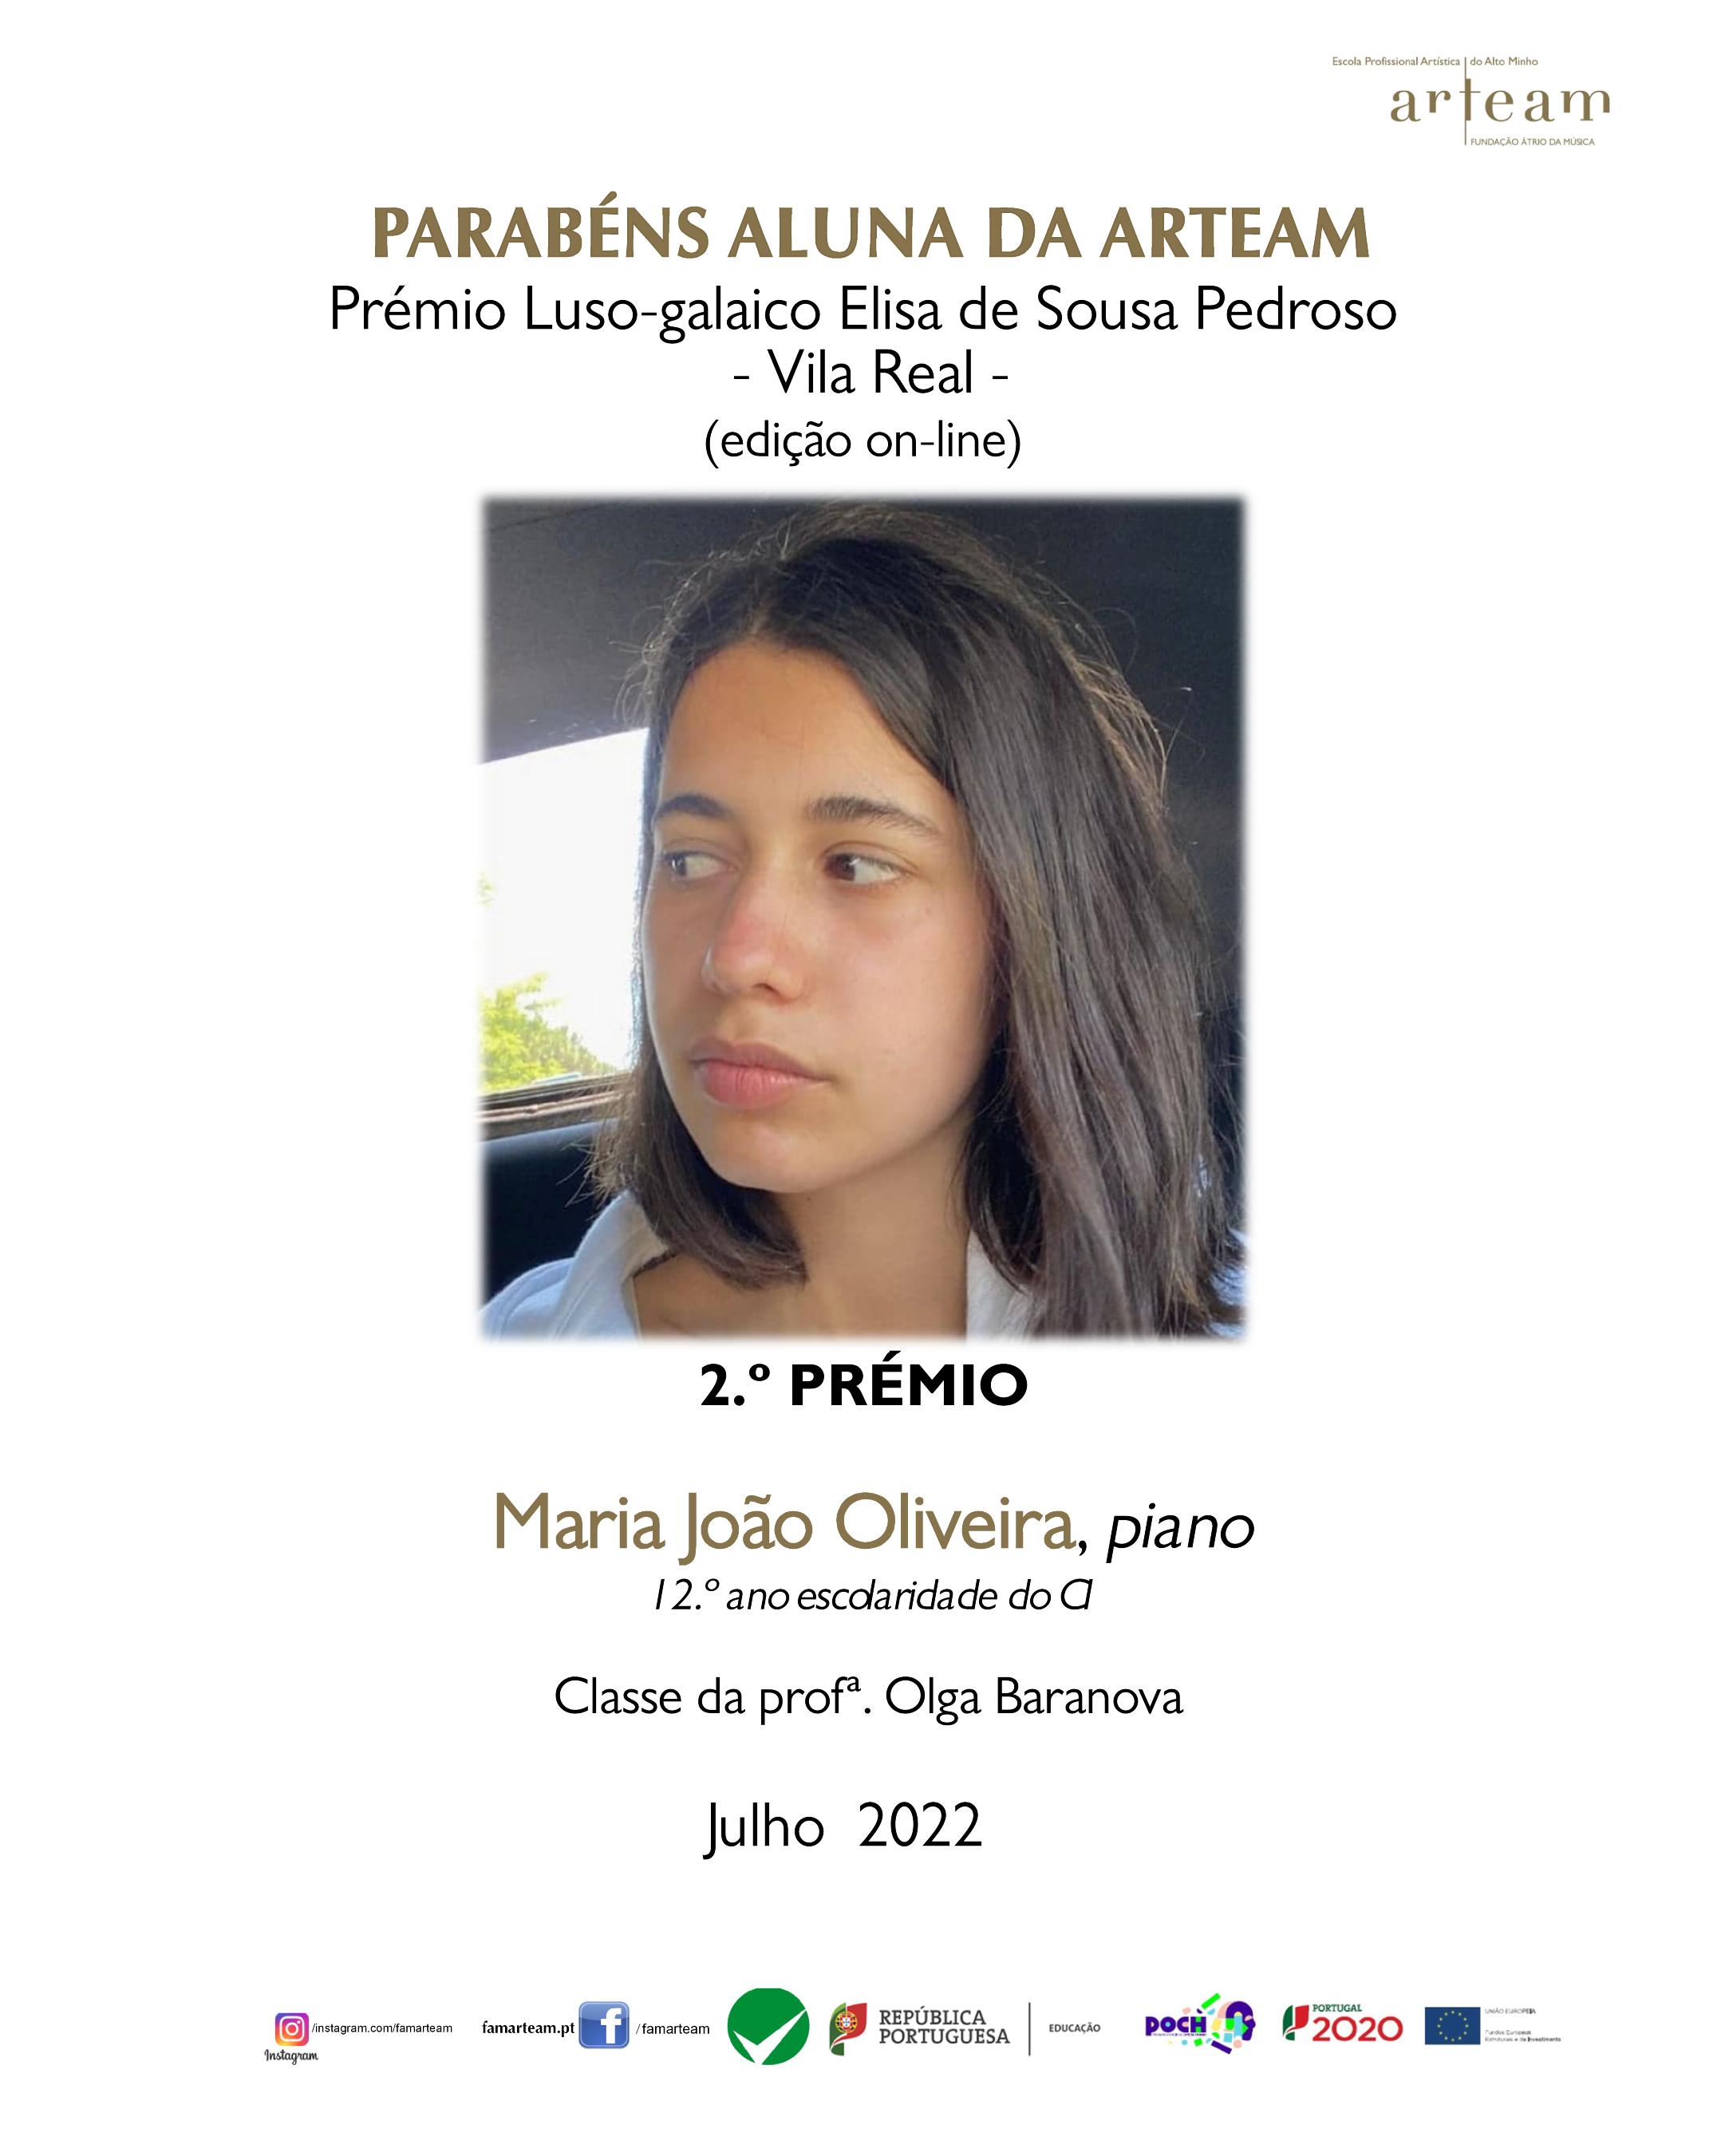 Pianista Maria João Oliveira, novamente, premiada